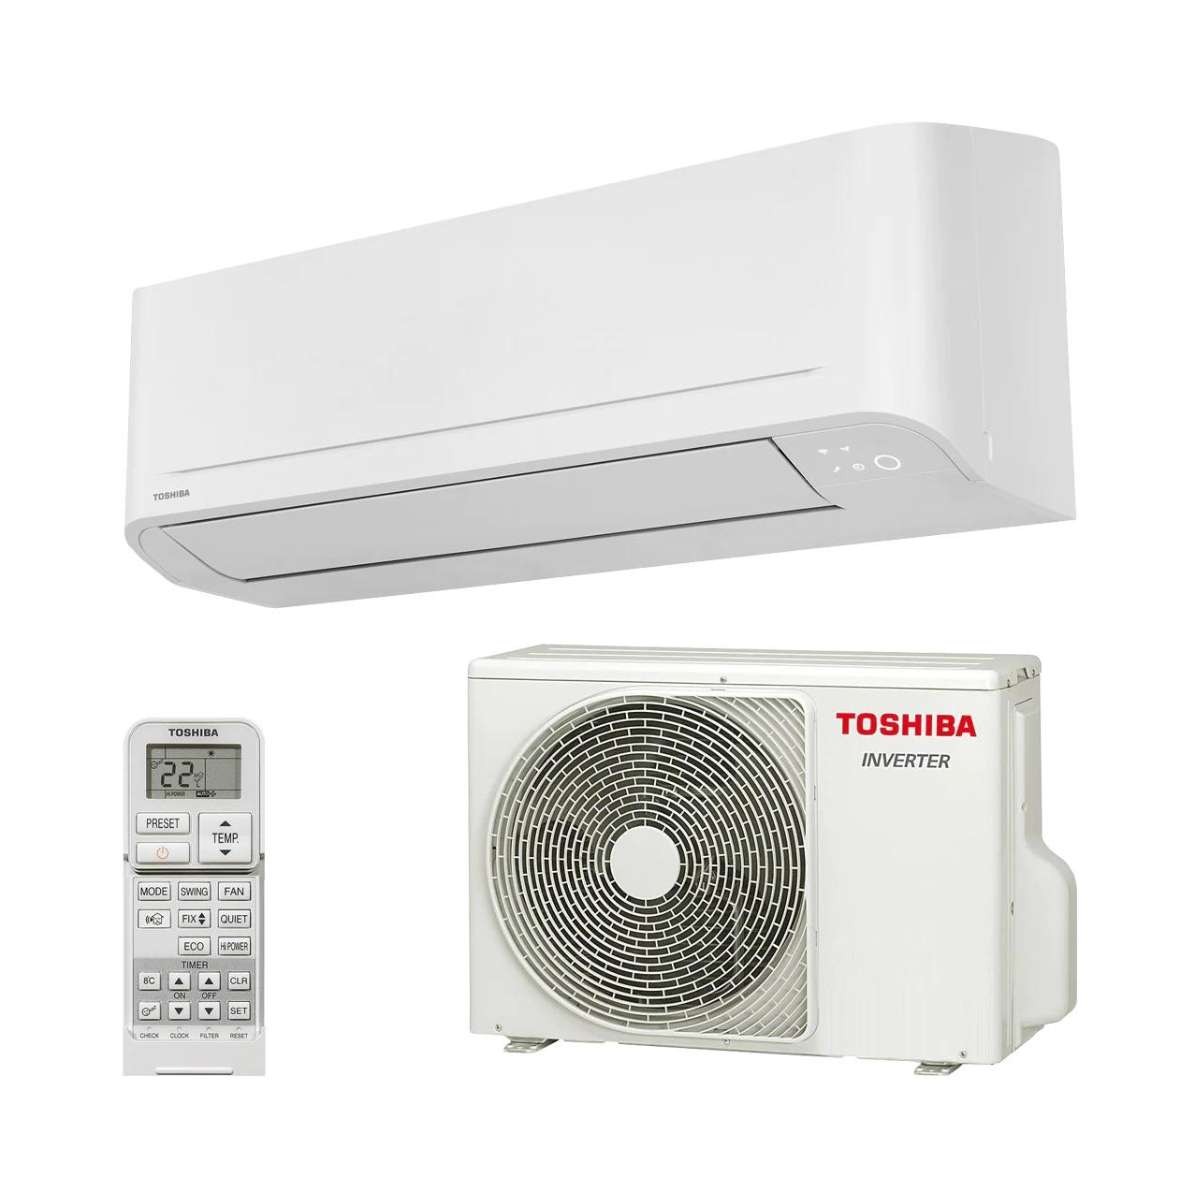 Split klimaanlage Toshiba Seiya+ 7 2,0 kW 7000 BTU mit der Referenz SEIYA+ 7 von der Marke TOSHIBA